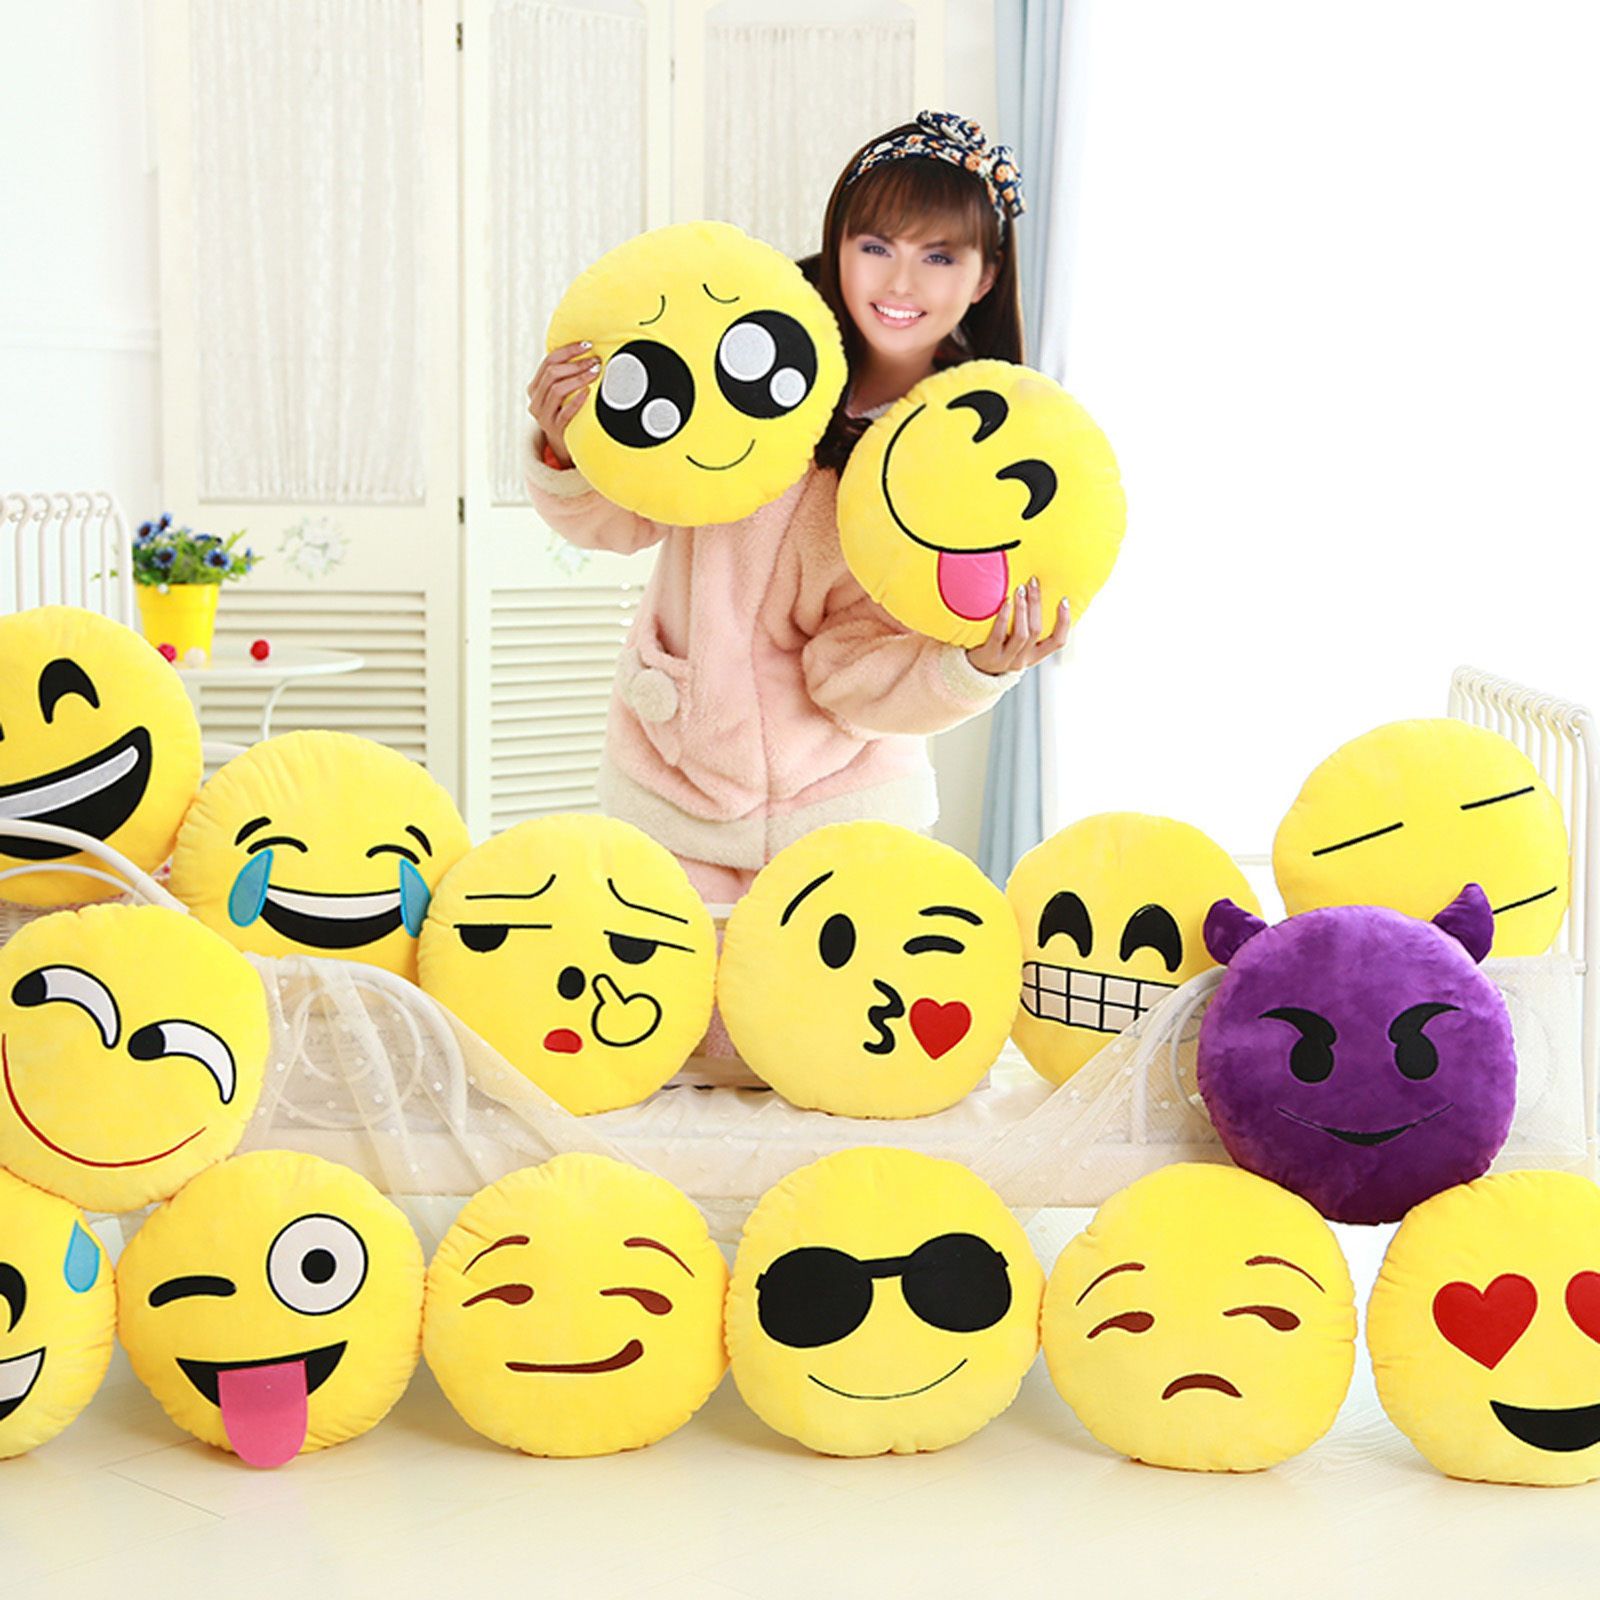 Yellow Soft Round Cushion Emoji Emoticon Stuffed Plush Toy Doll ...